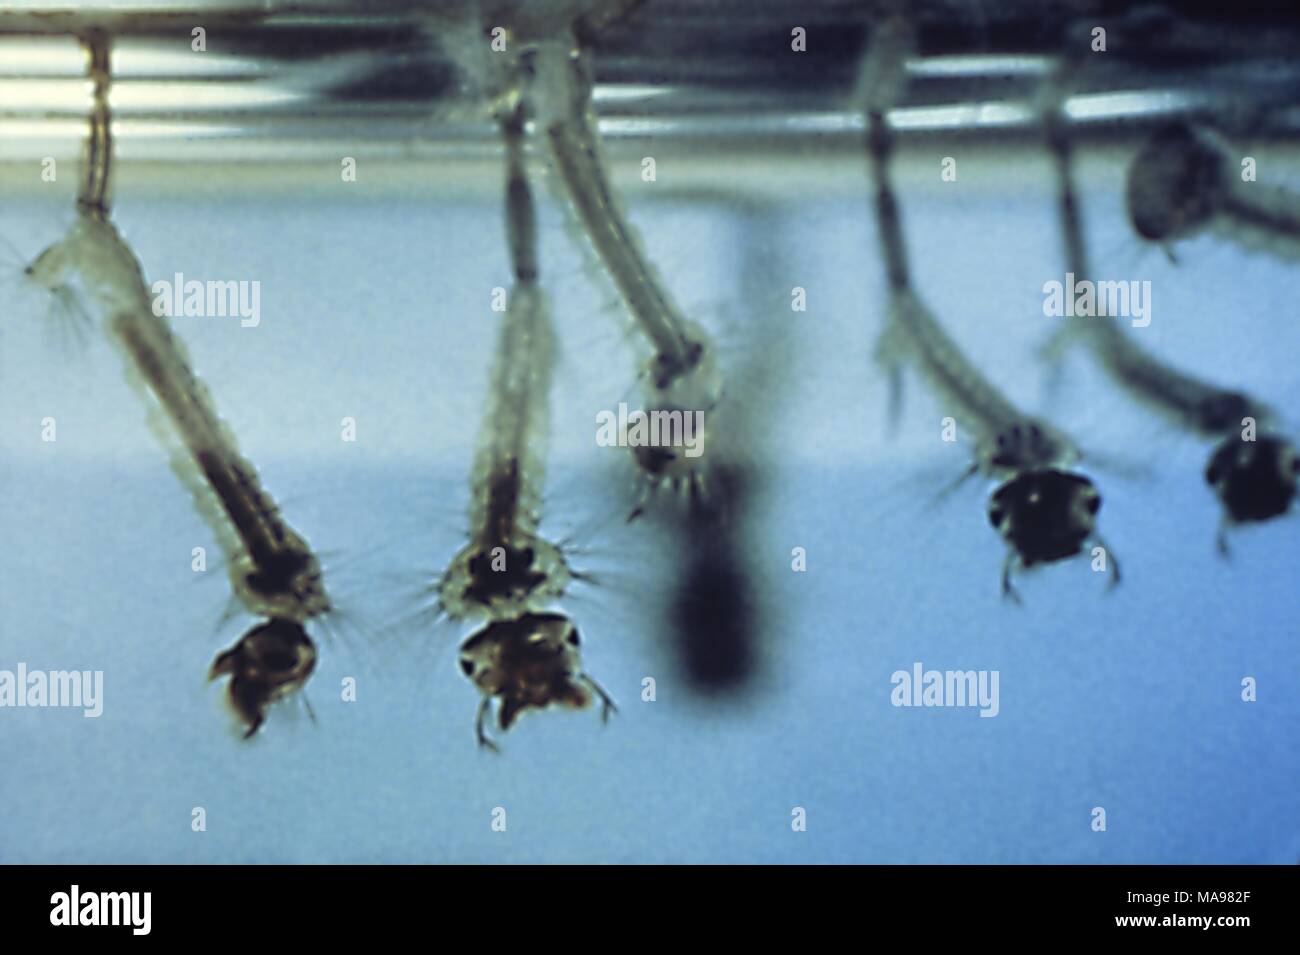 Le larve della zanzara riposano sospesi diagonalmente dalla superficie dell'acqua, 1972. Immagine cortesia di centri per il controllo delle malattie (CDC). () Foto Stock